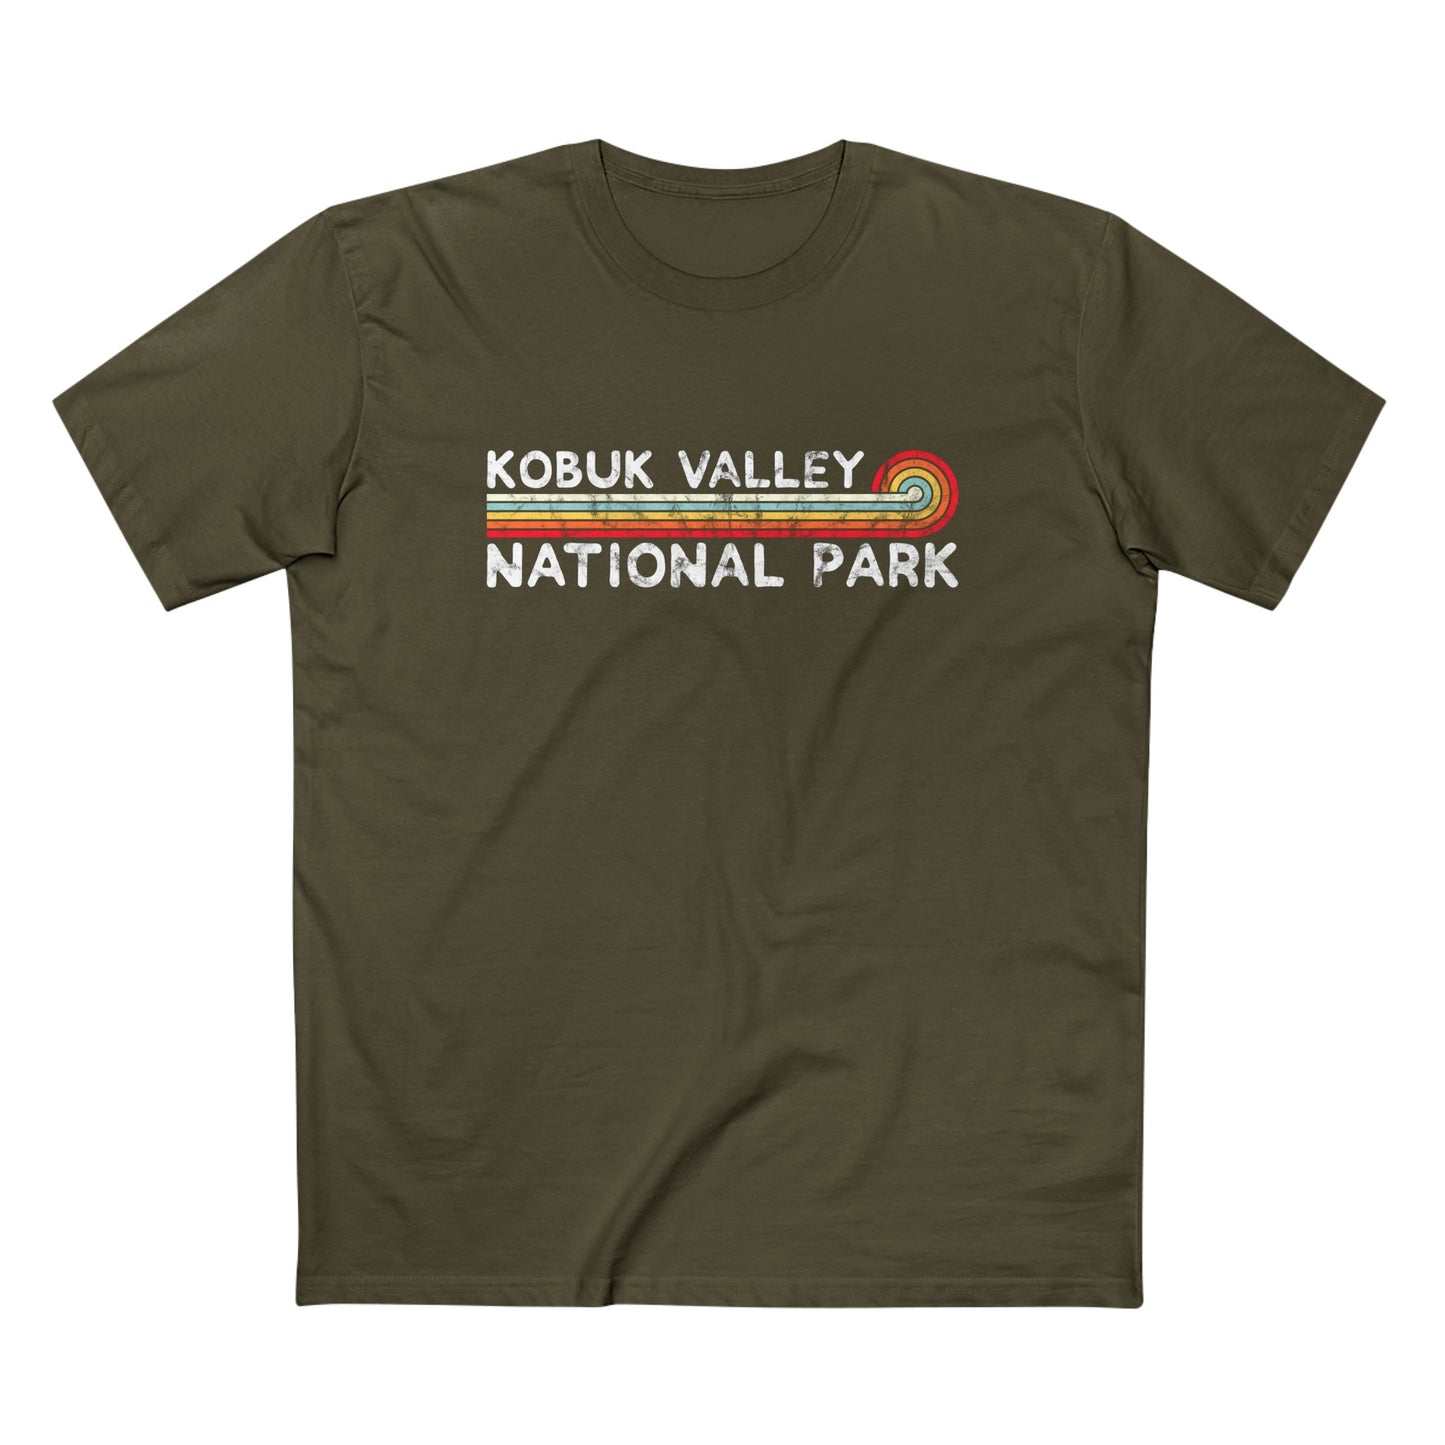 Kobuk Valley National Park T-Shirt - Vintage Stretched Sunrise